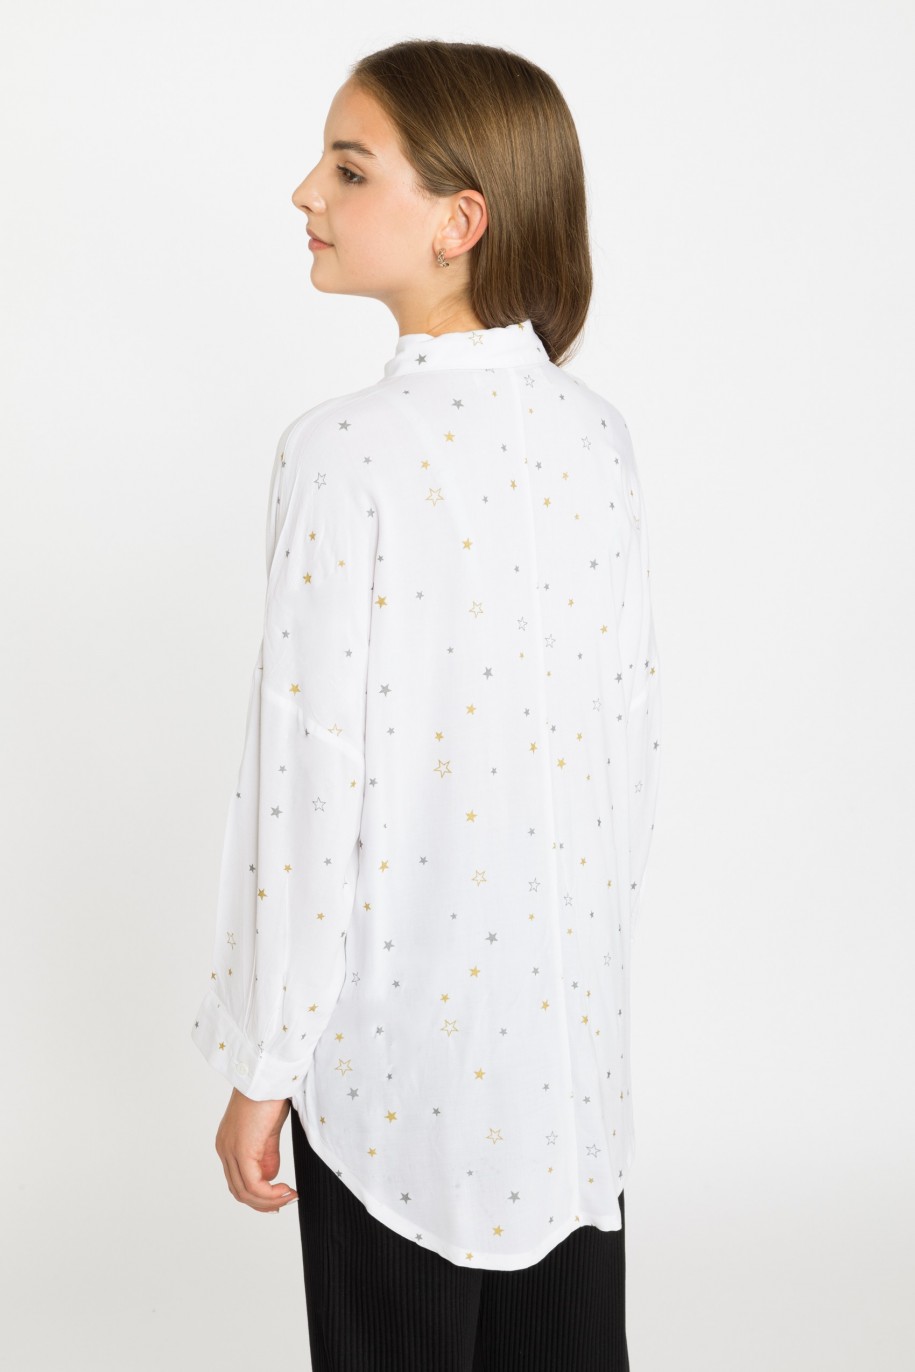 Biała koszula w gwiazdki dla dziewczyny - 31040